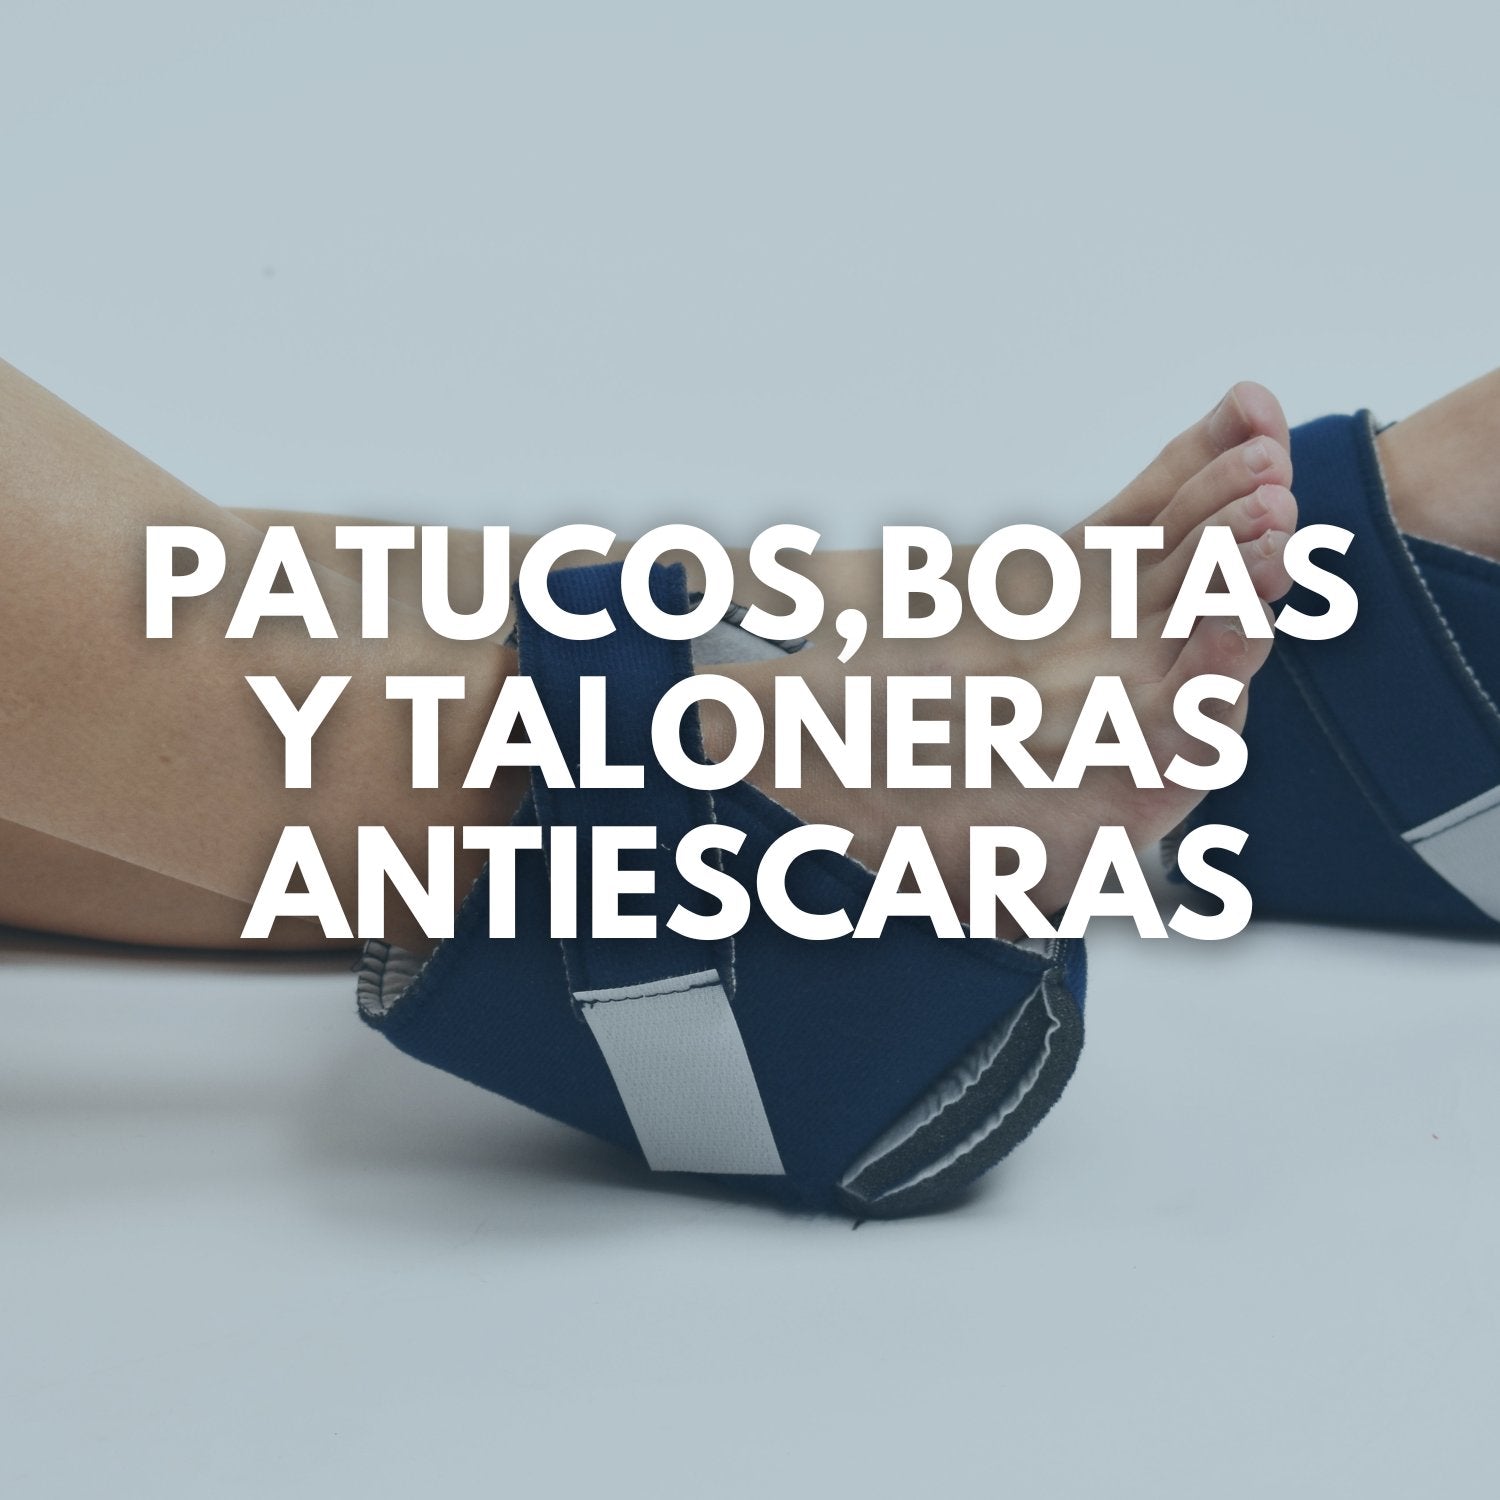 patucos-antiescaras-cojines-antiescaras-para-pies-proteccion-de-pies-ortoprime